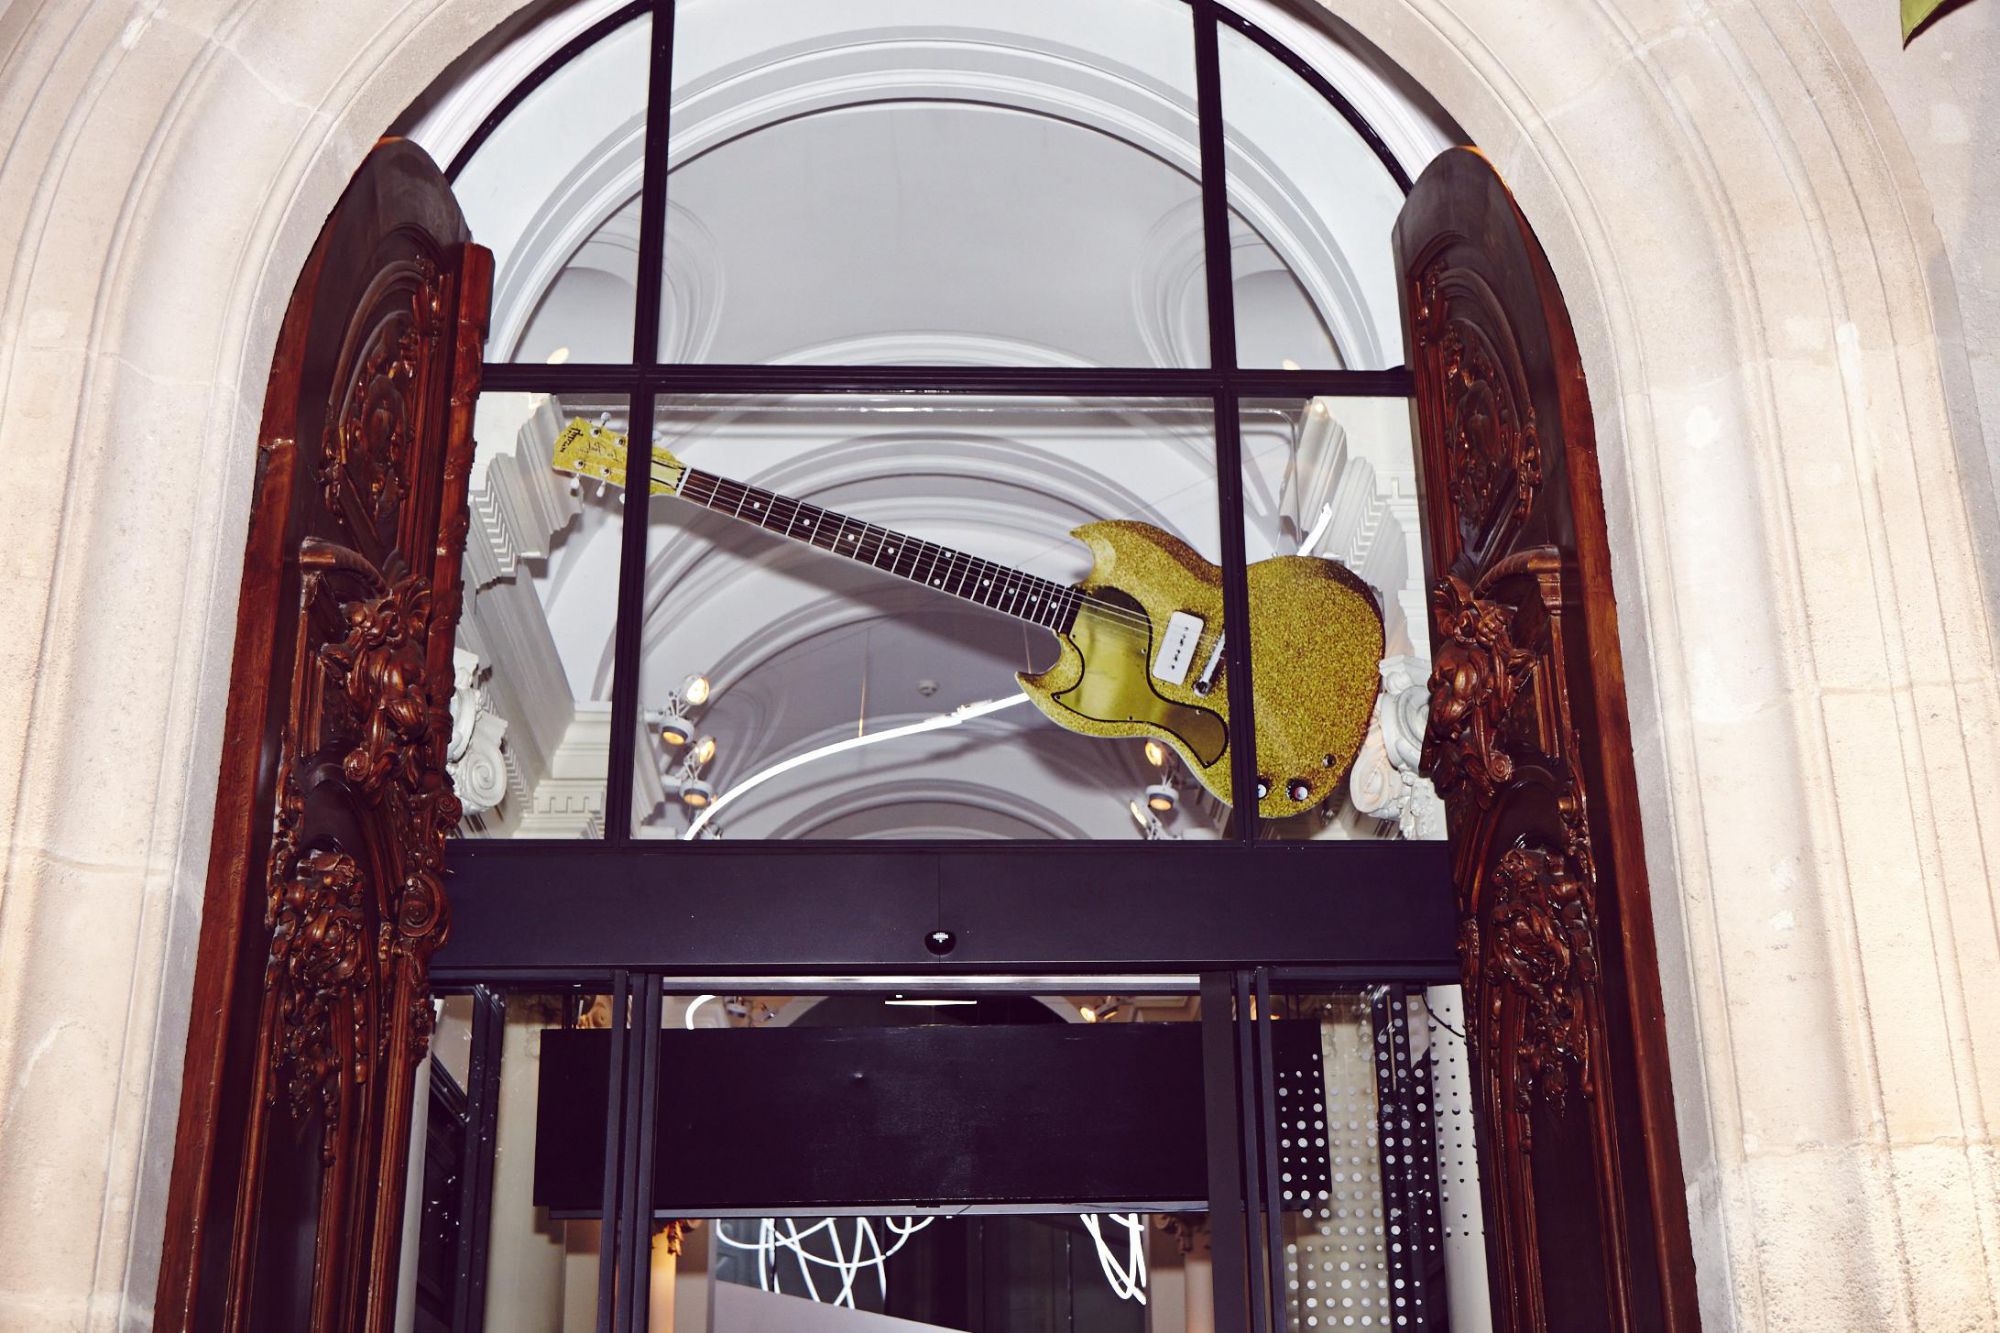 La guitare géante de 2 mètres de haut au-dessus de l'entrée du W